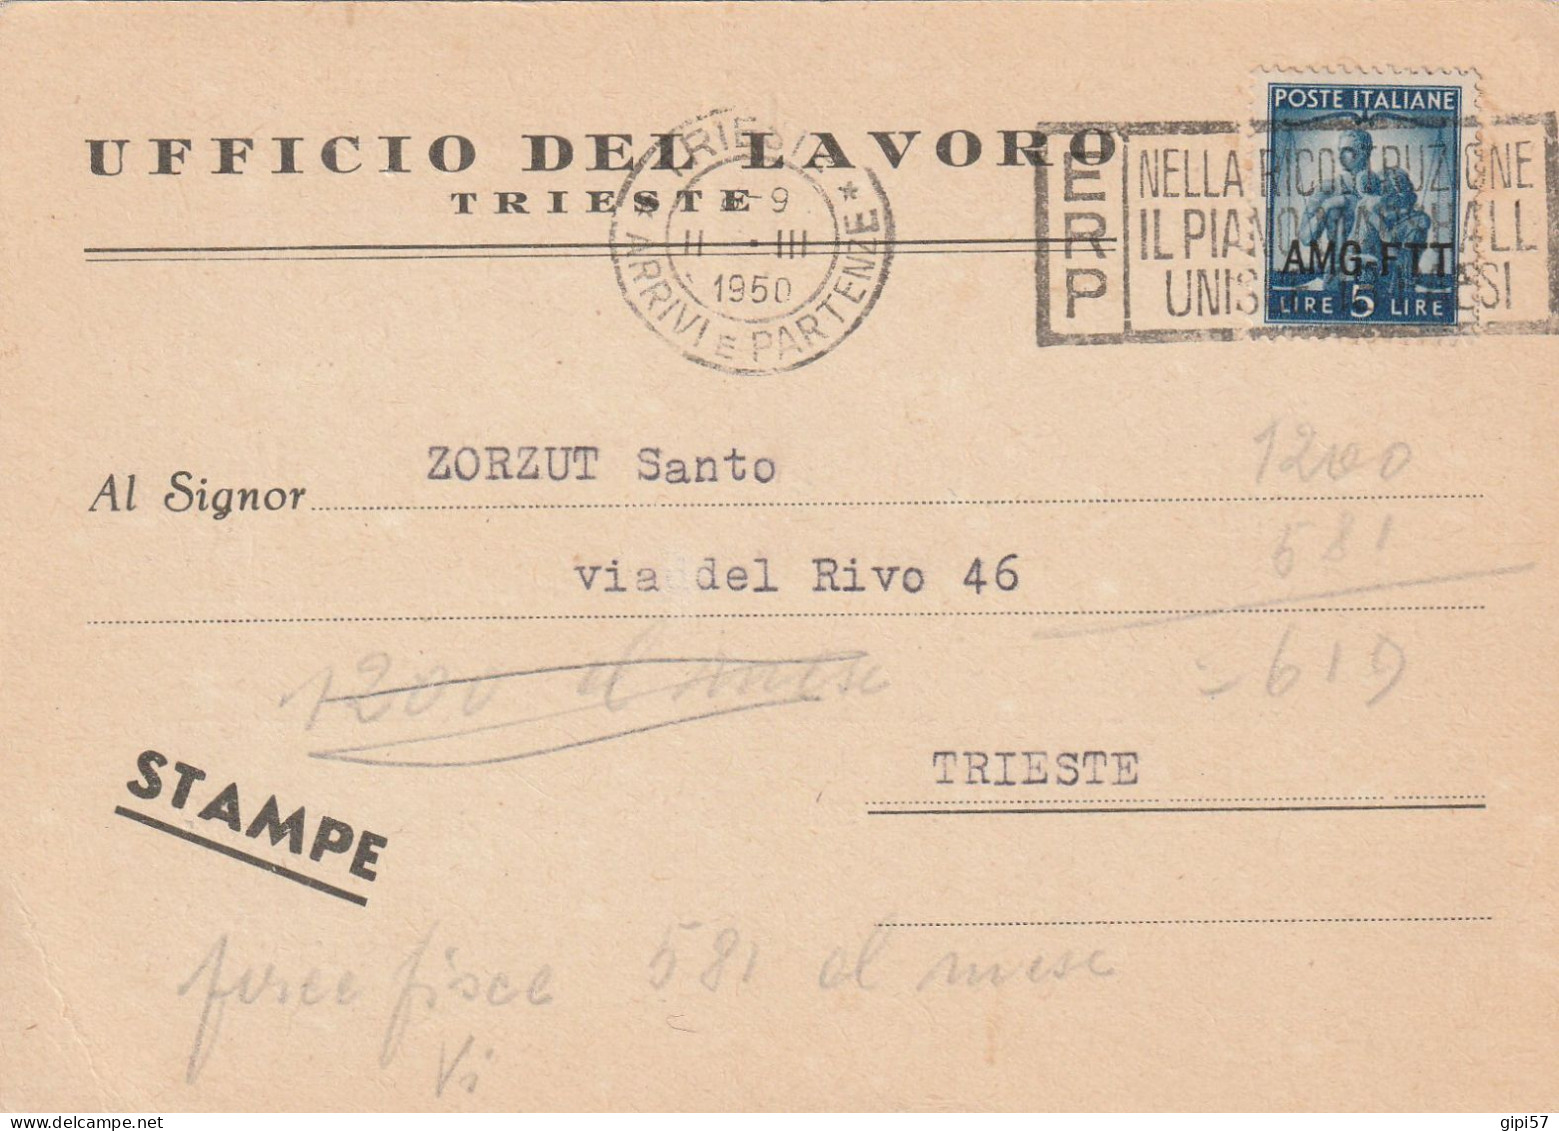 STAMPE UFFICIO LAVORO TRIESTE ANNULLO TARGHETTA ERP 1950 - Marcophilie